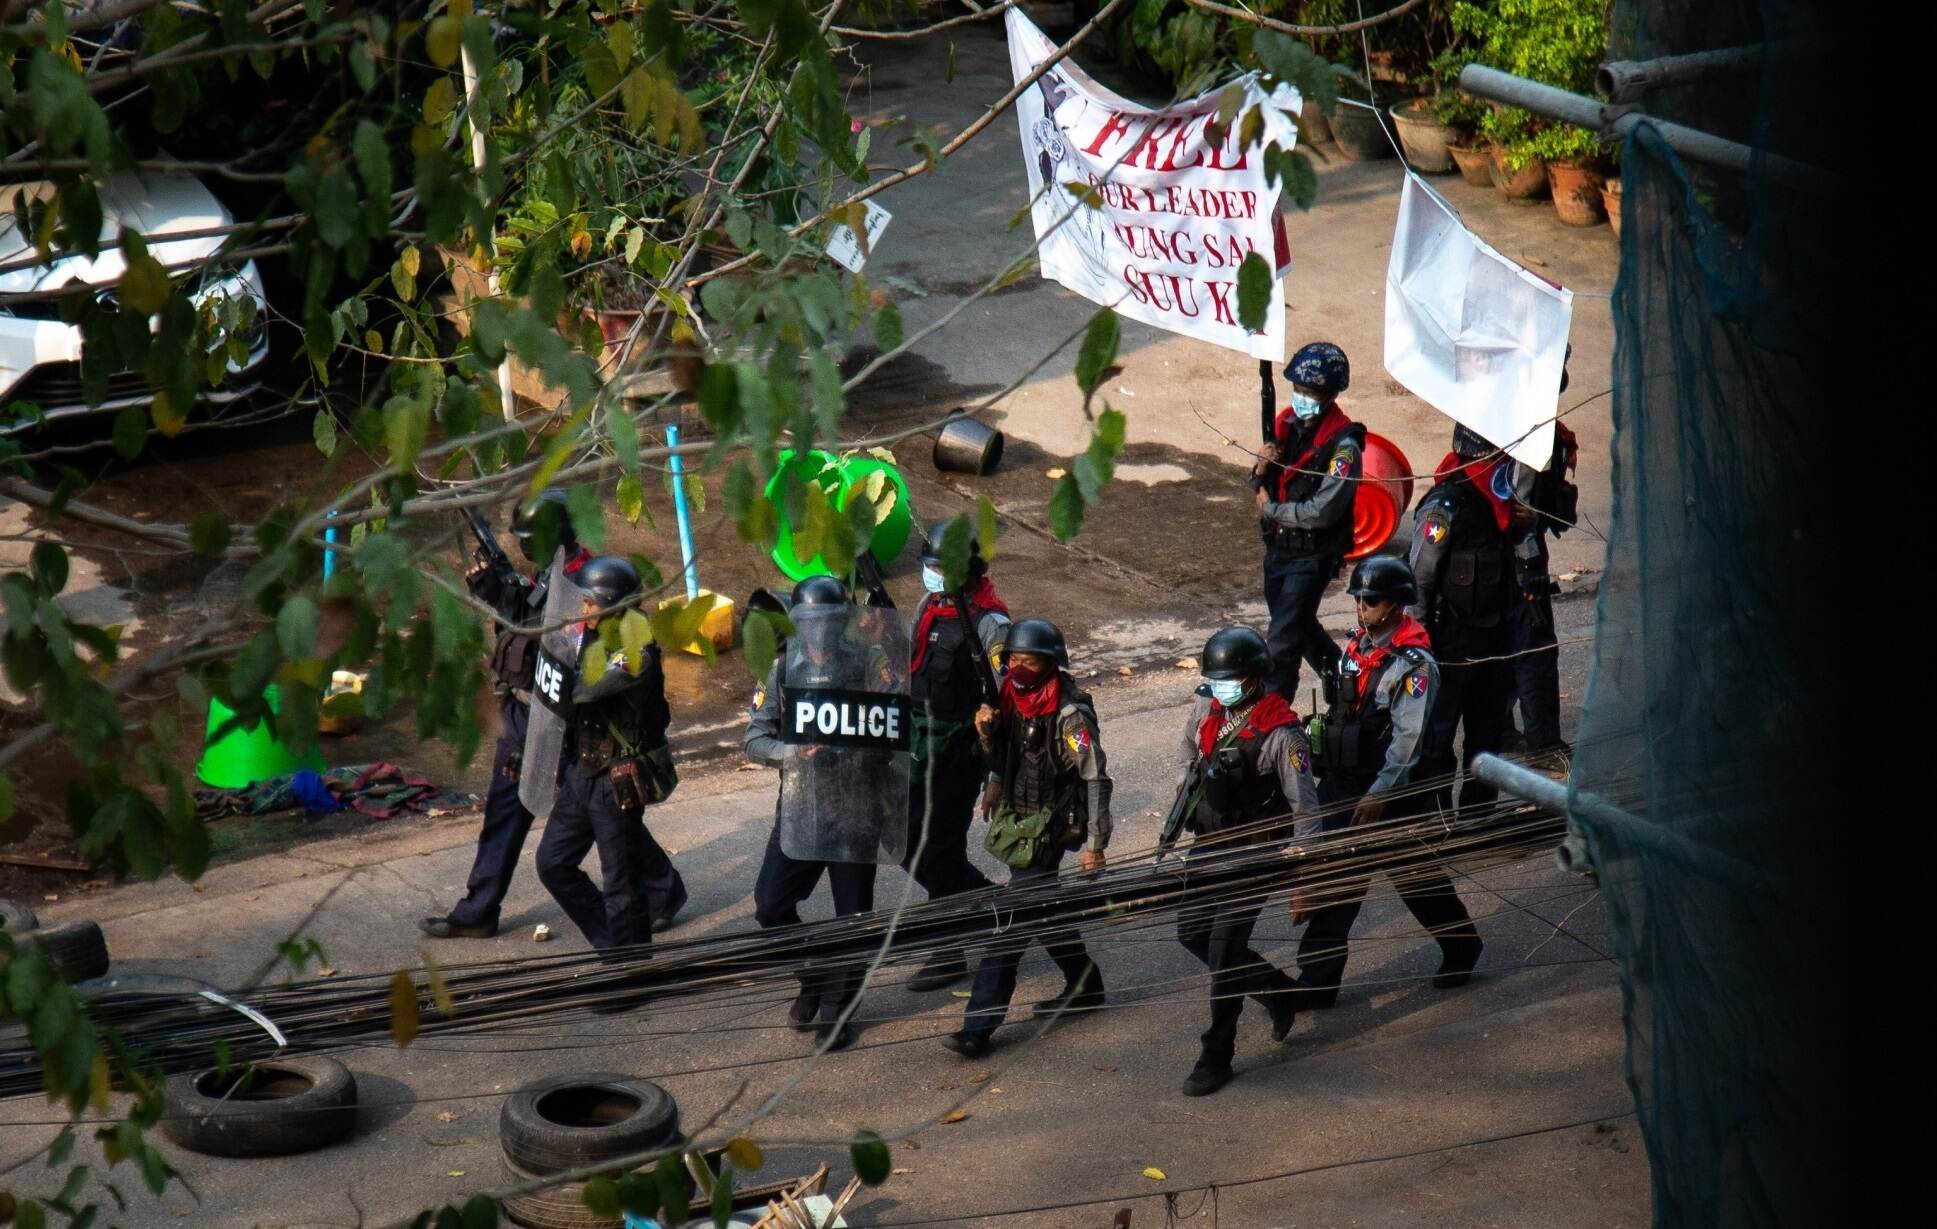 म्यांमार में तख्तापलट के विरोध में तेज हुई हिंसा, प्रदर्शनकारियों के अलावा आम नागरिकों को भी मार रही सेना